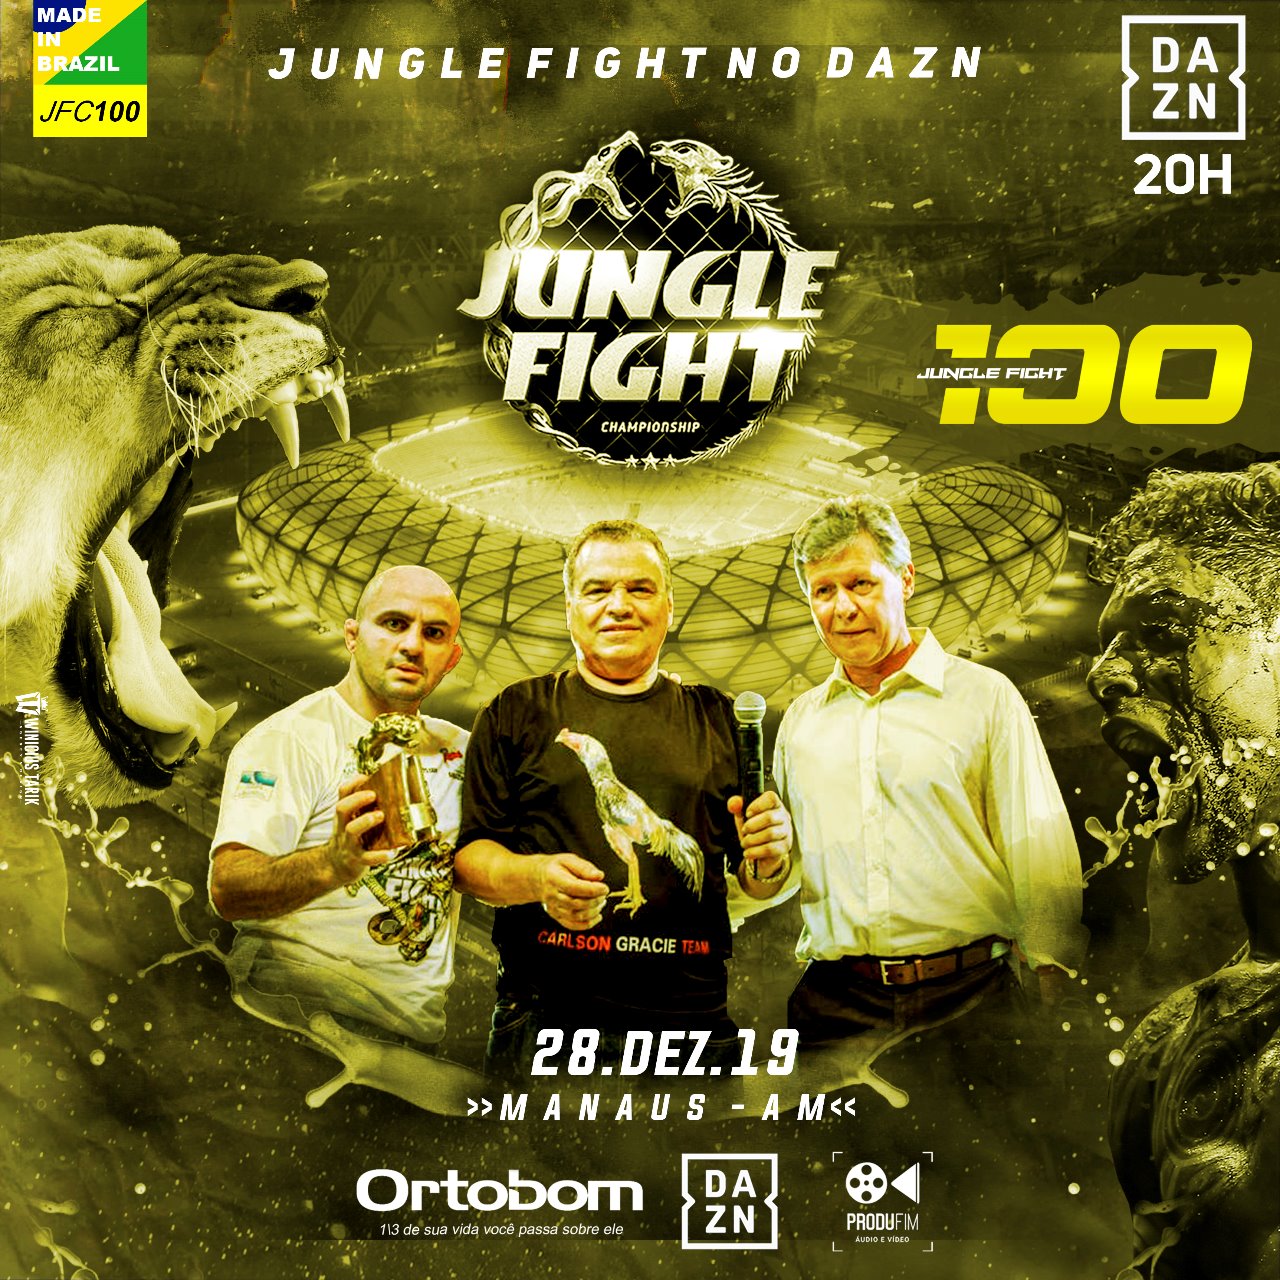 Jungle Fight volta às origens e realiza edição histórica de número 100 em Manaus, no próximo dia 28; confira